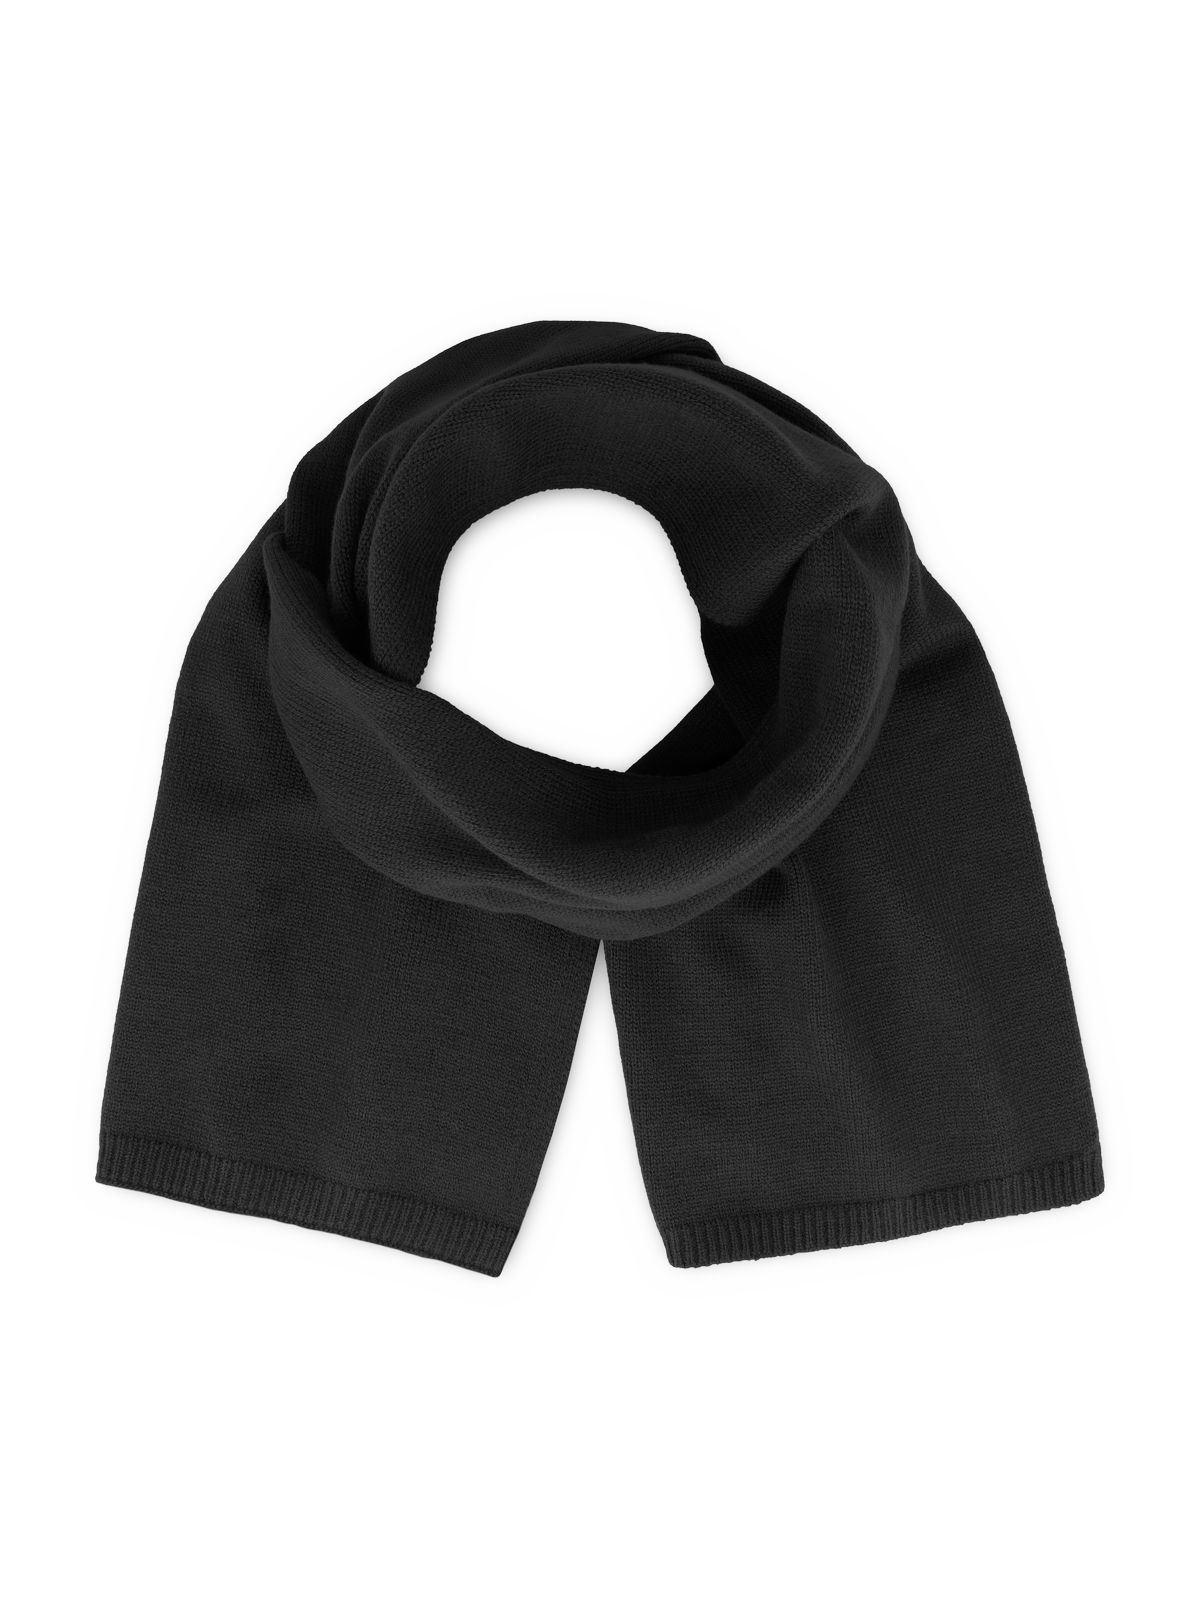 wind-scarf-s-black.webp